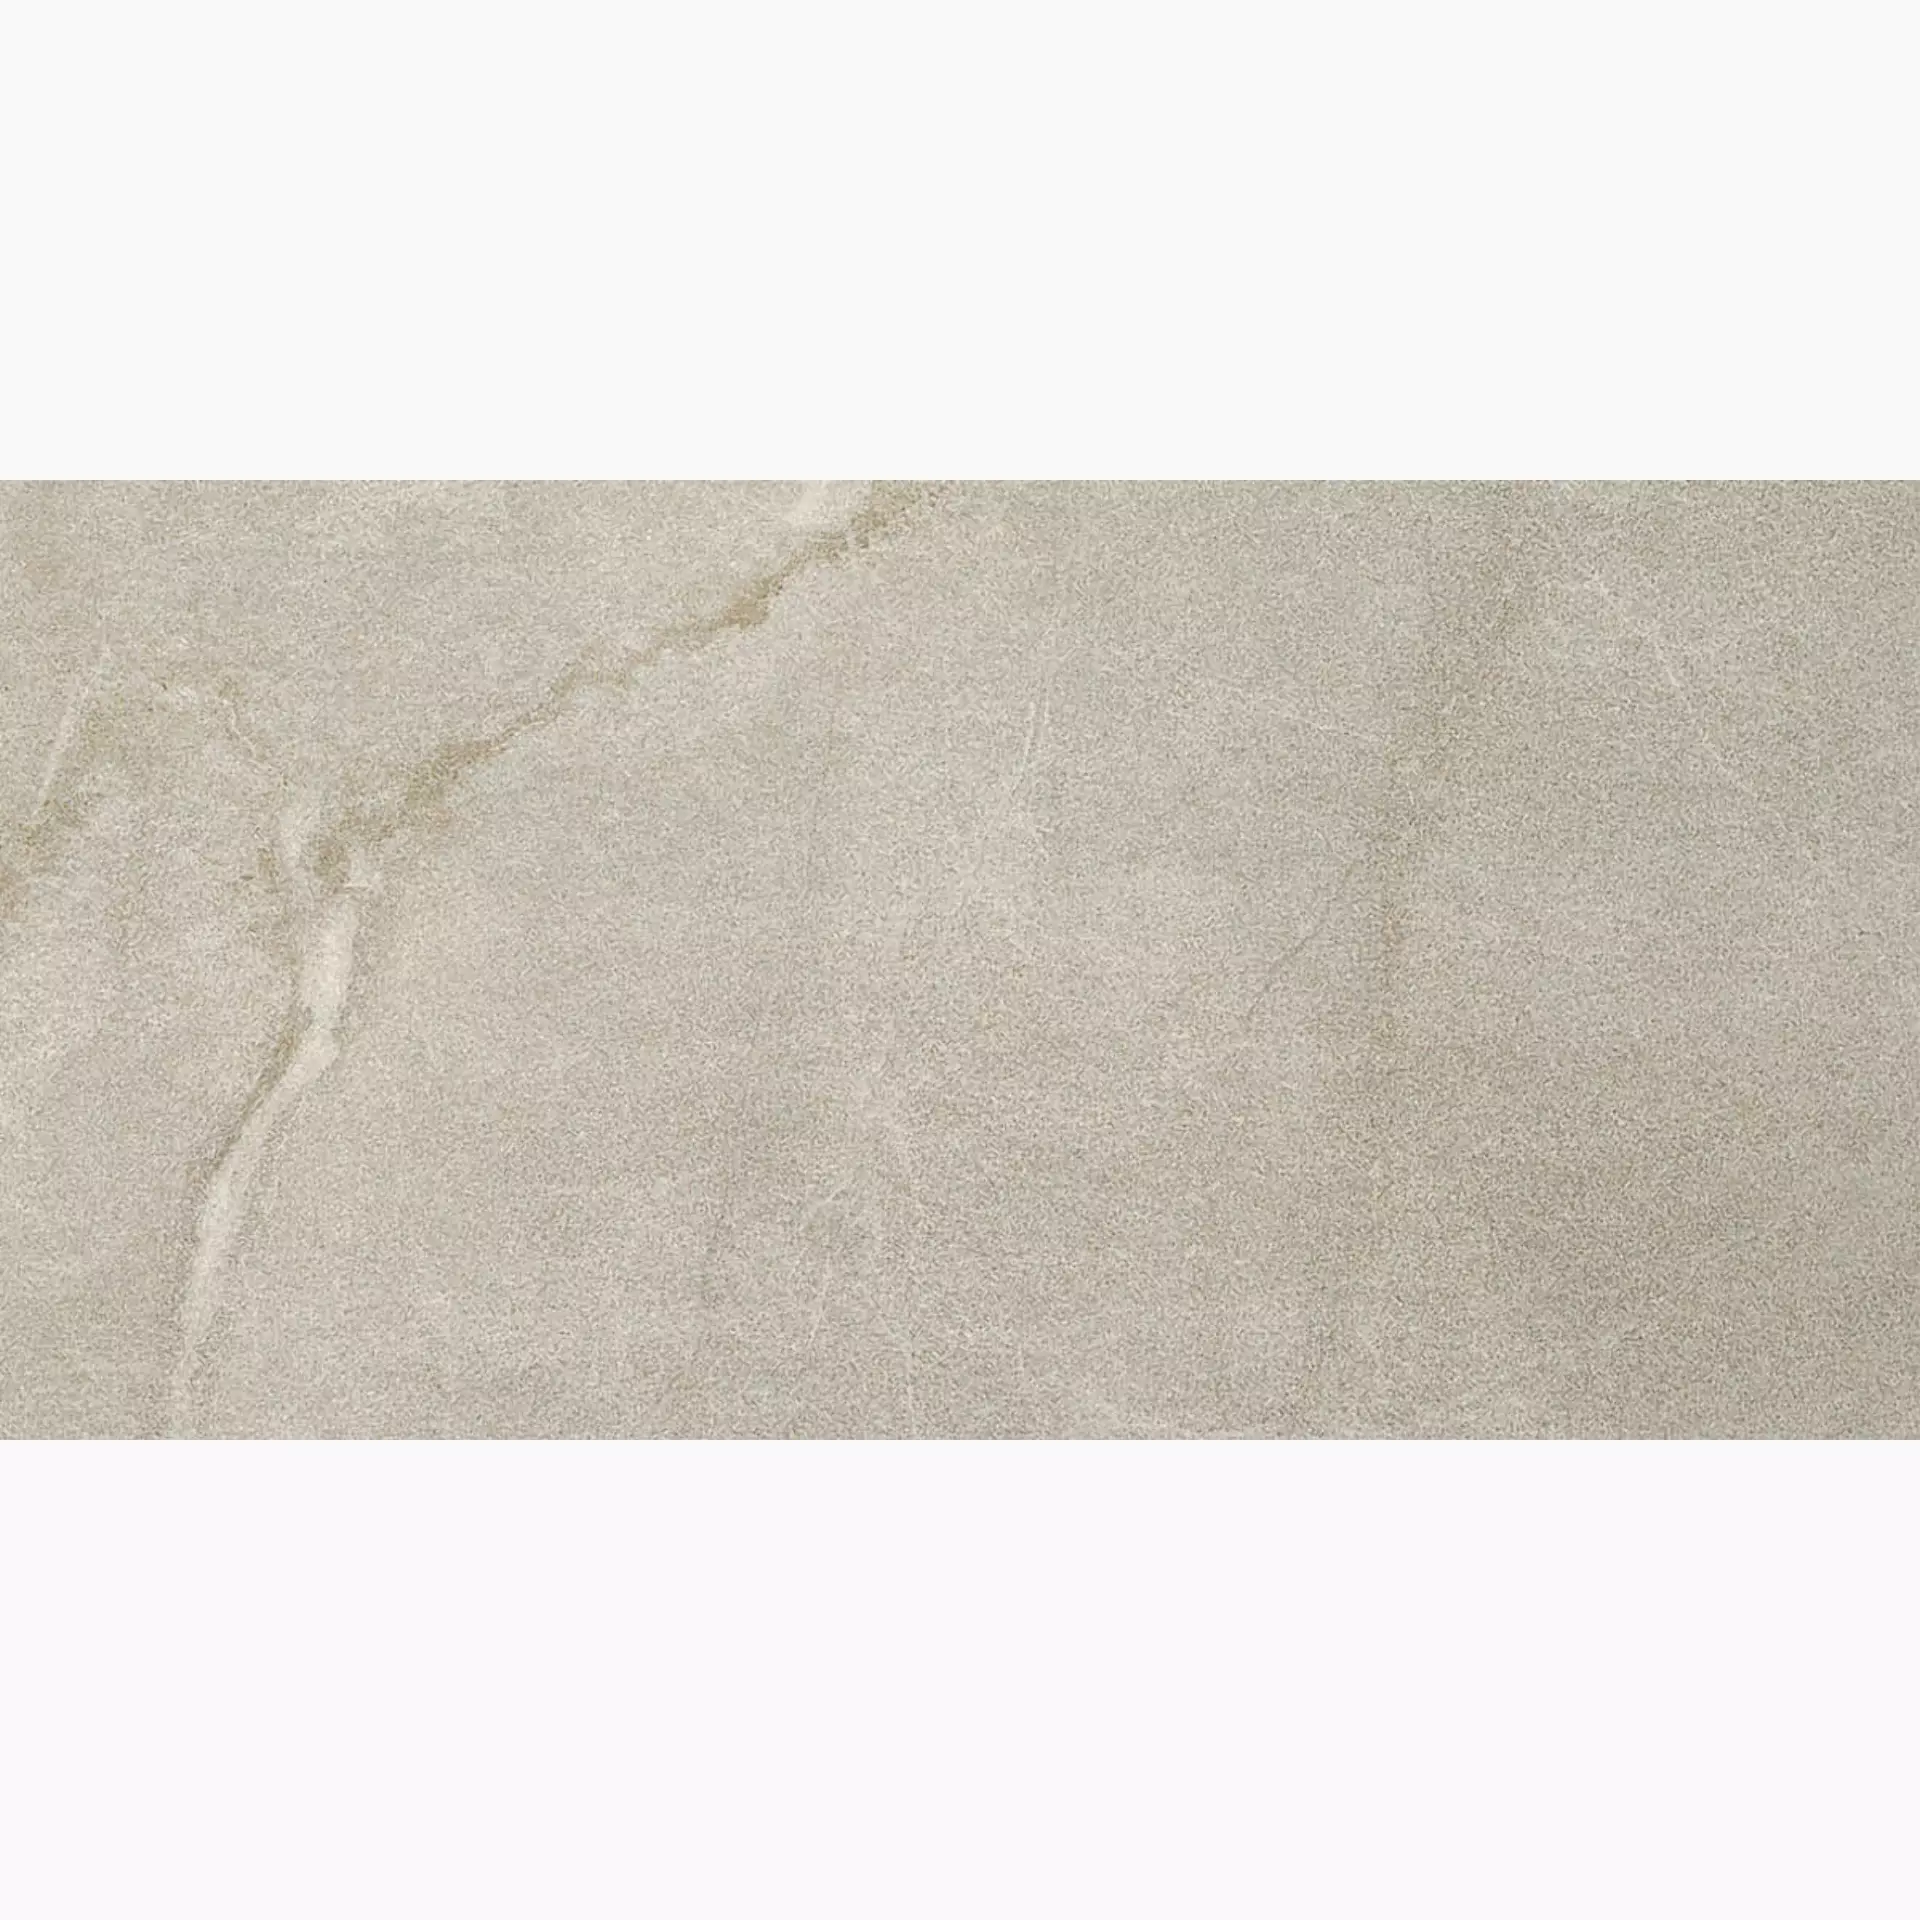 Imola Muse Grey Natural Slate Cut Matt fondi 60x120cm rectified 10,5mm - MUSE 12G